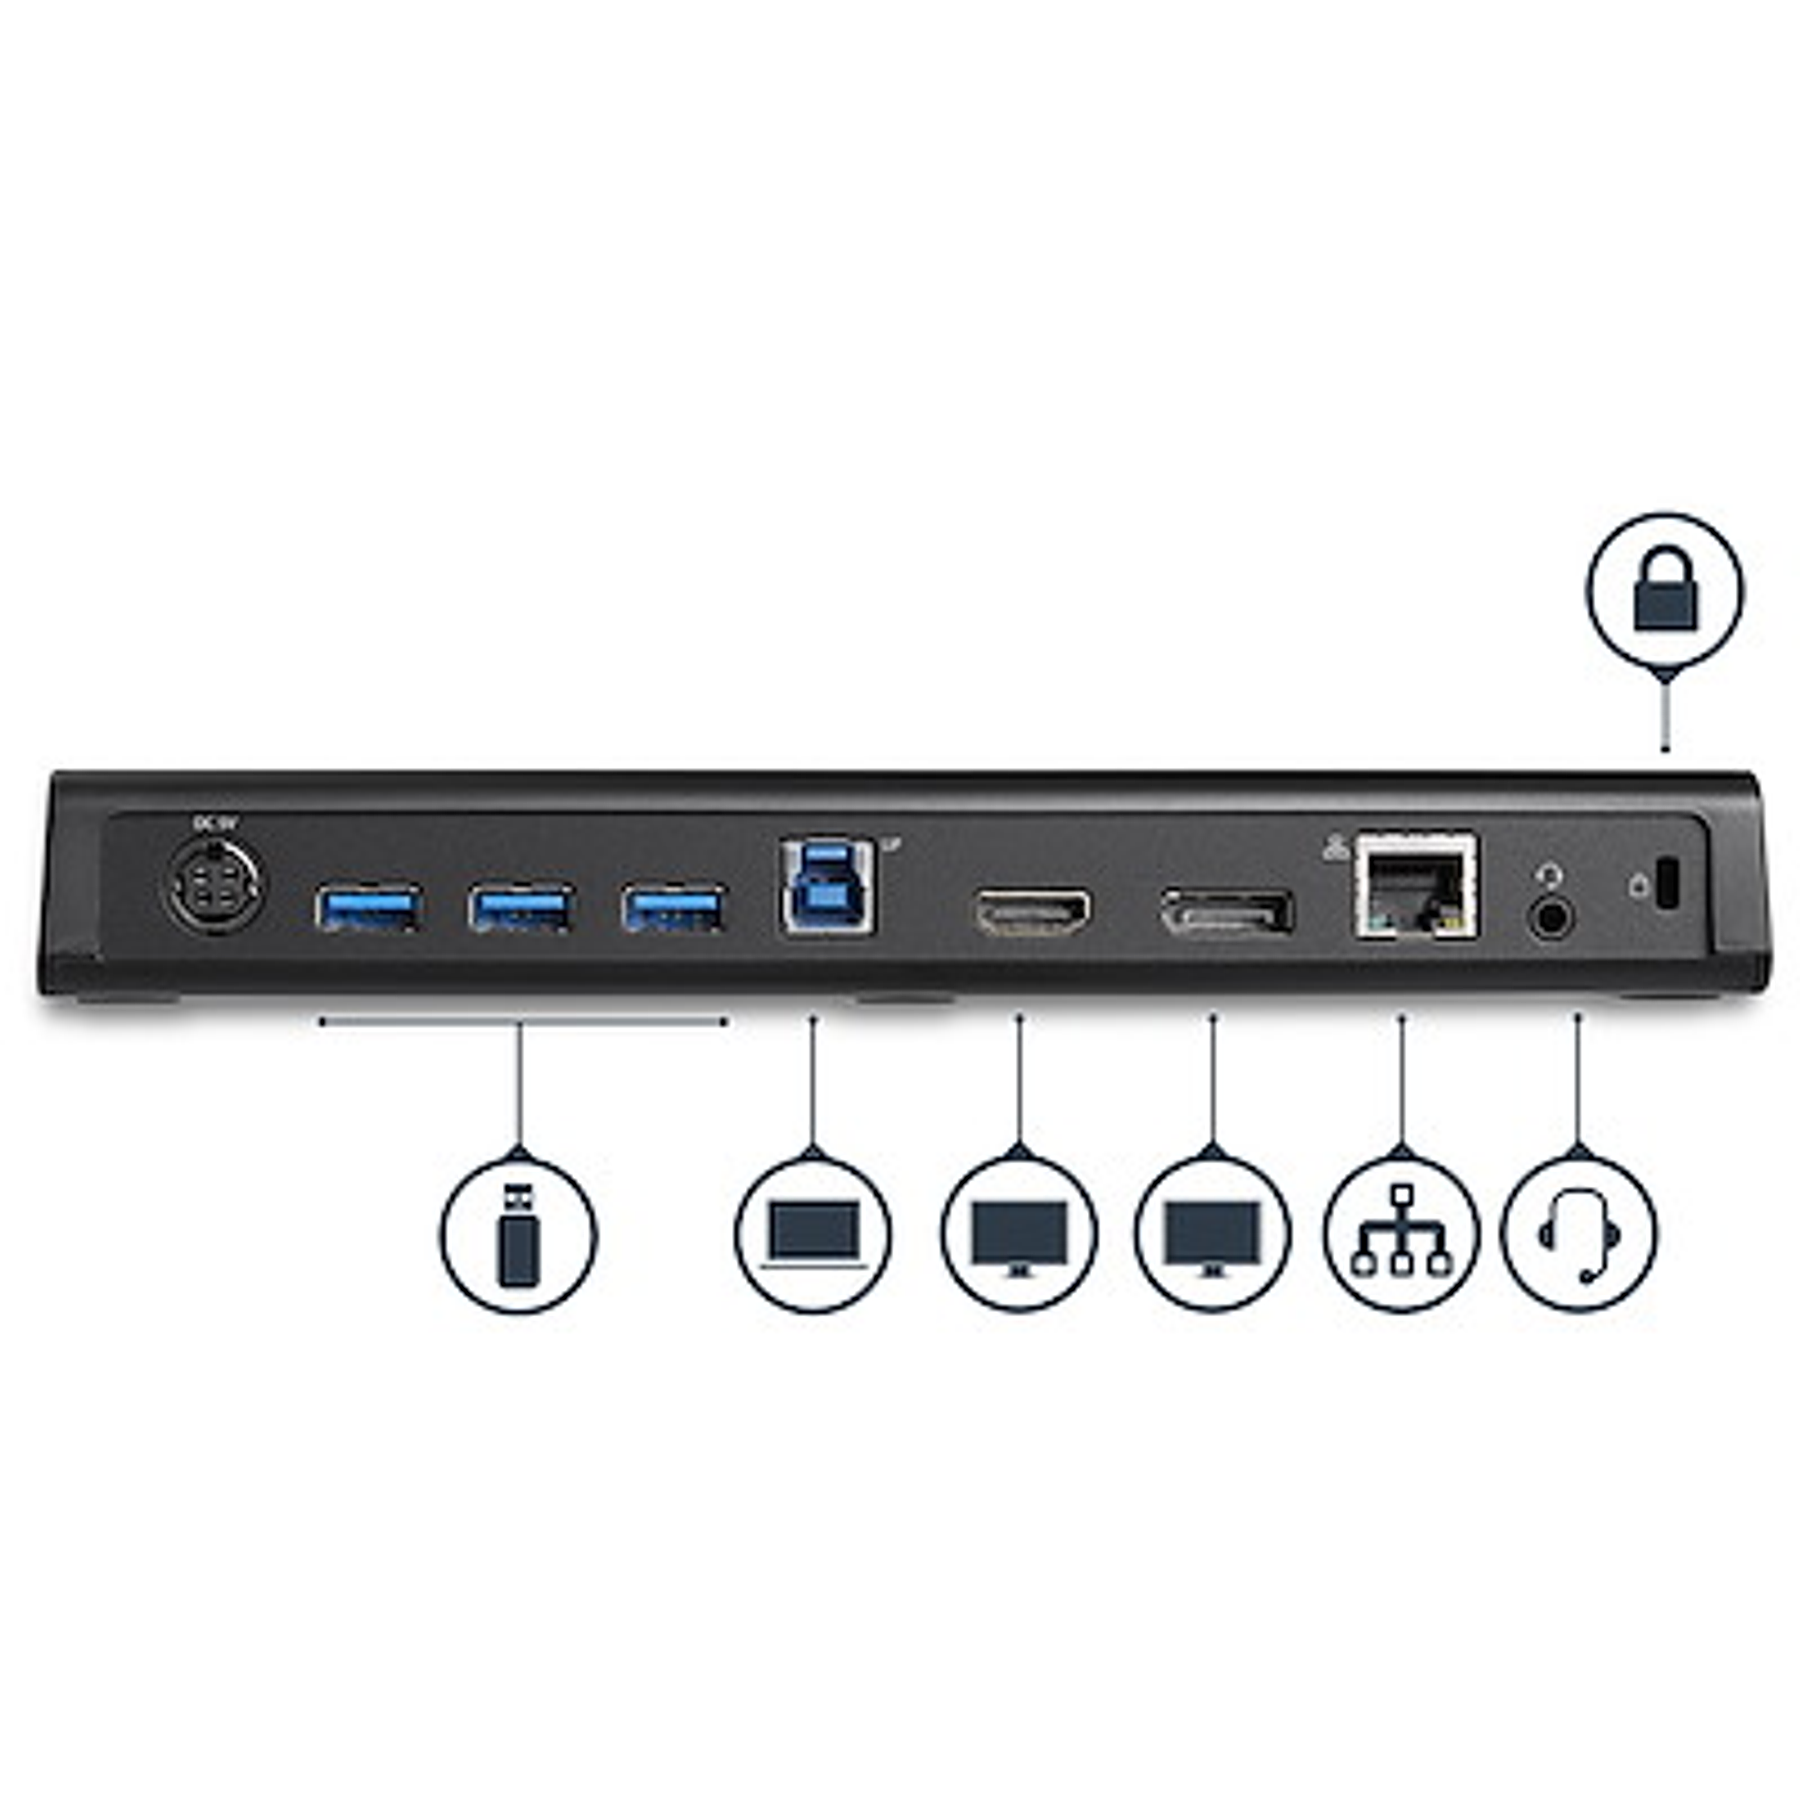 StarTech Docking Station USB 3.0 para Dos Monitores con HDMI